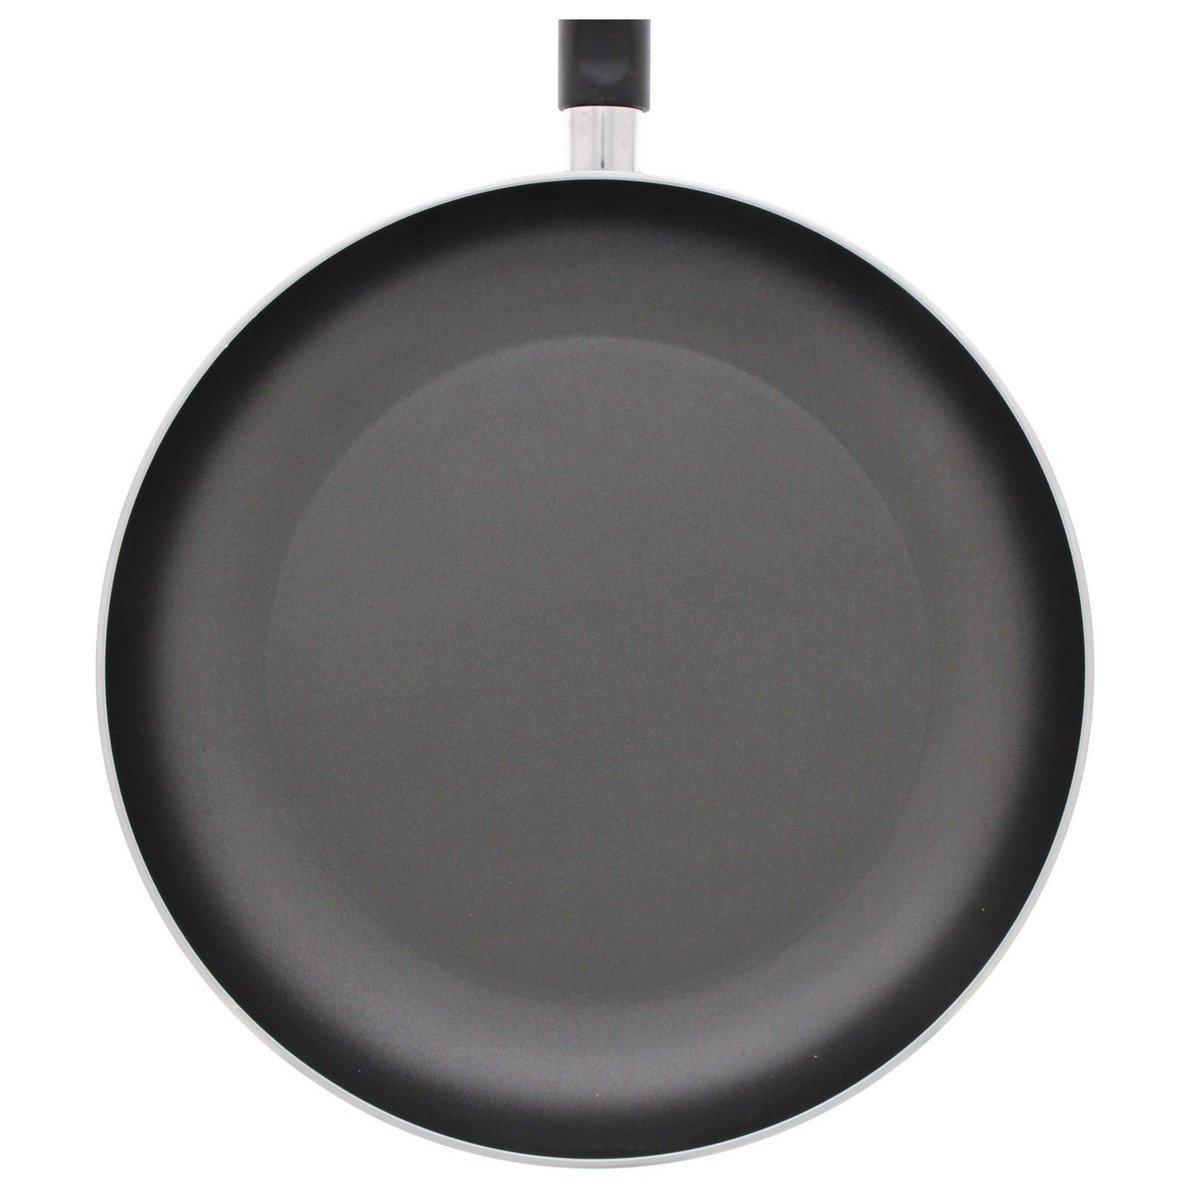 Prestige Classique Non-Stick Fry Pan, 24 cm